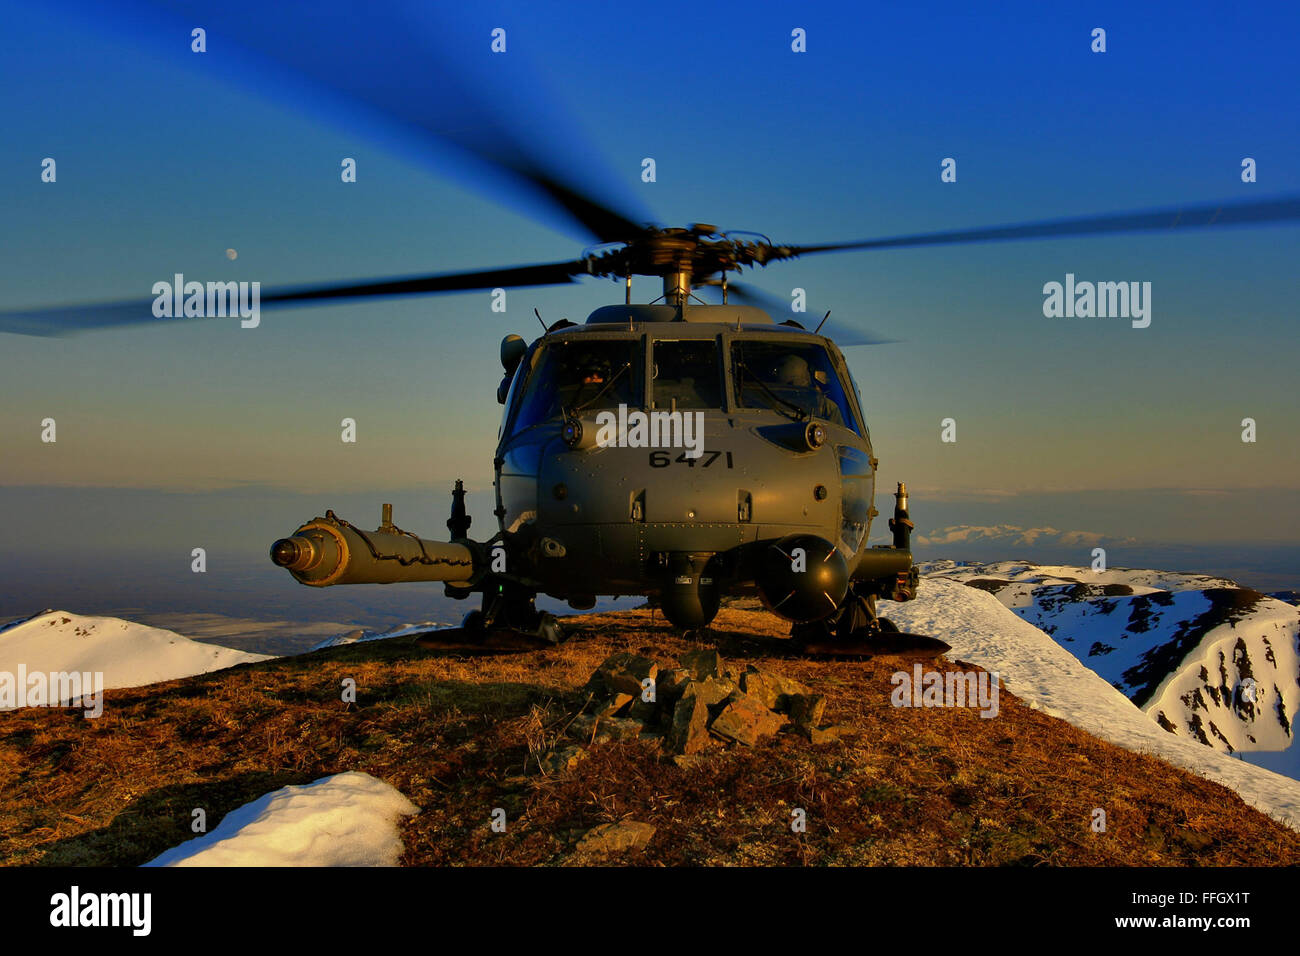 La Guardia Nacional Aérea de Alaska HH-60G allanar Hawk prácticas operaciones de aterrizaje de gran altitud. La misión primordial de la allanar Hawk helicóptero es para conducir de día o de noche el personal de operaciones de recuperación en entornos hostiles para recuperar personal aislado durante la guerra. Foto de stock